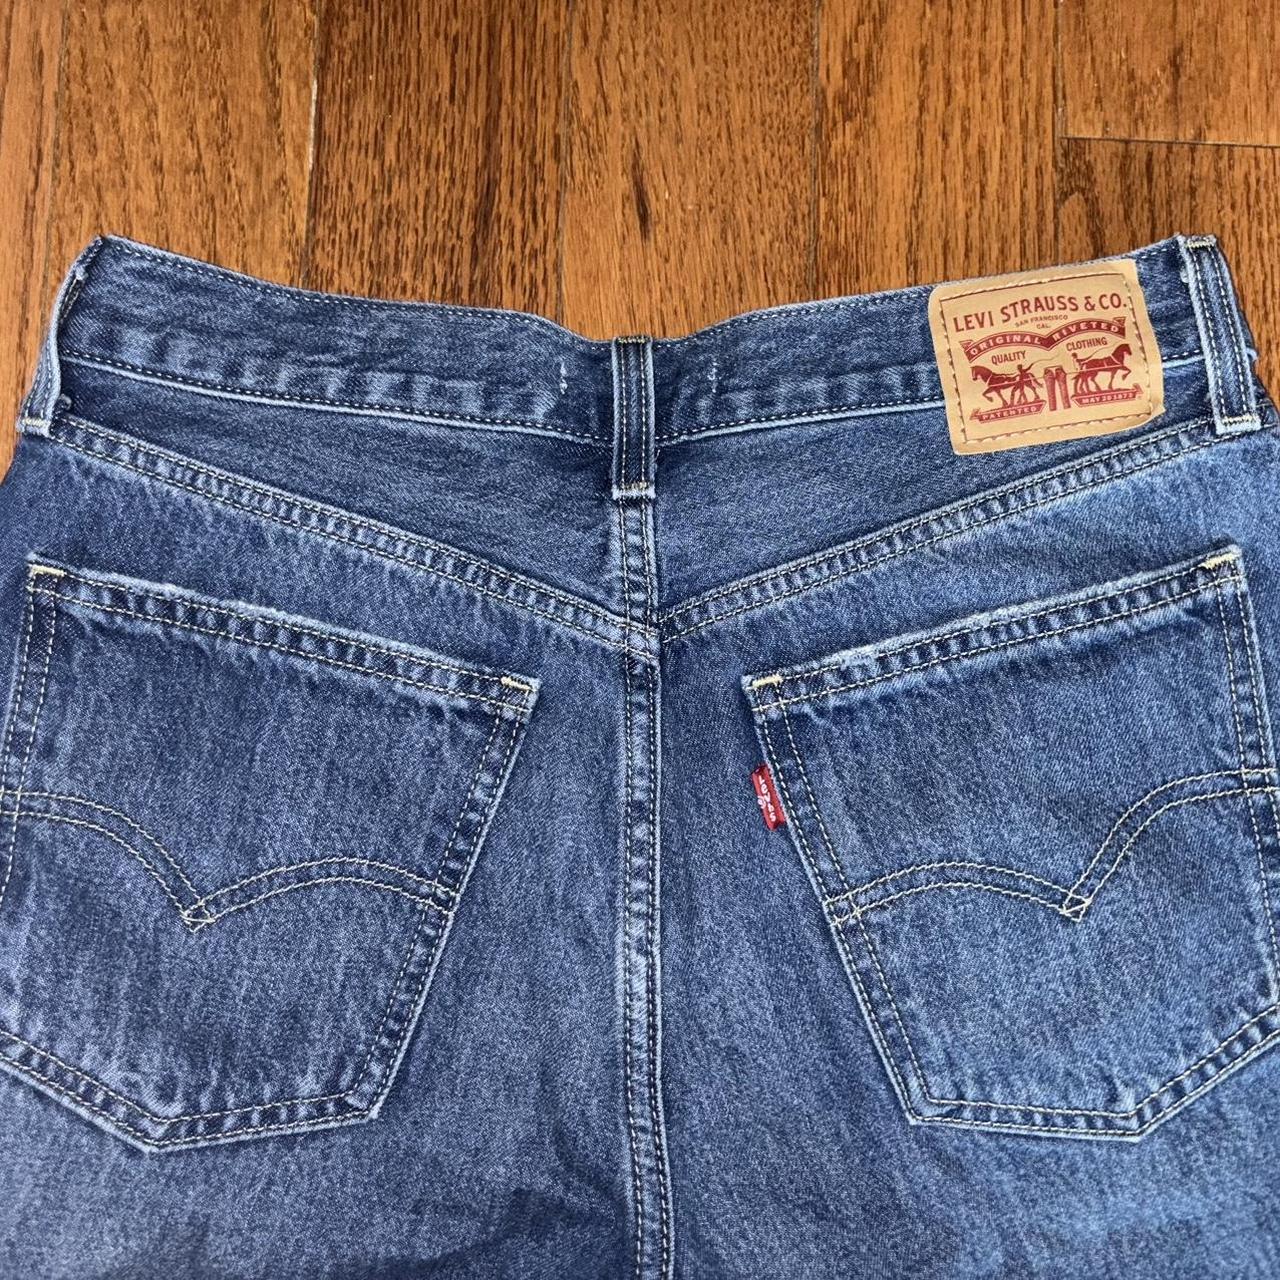 Low Pro Women's Jeans